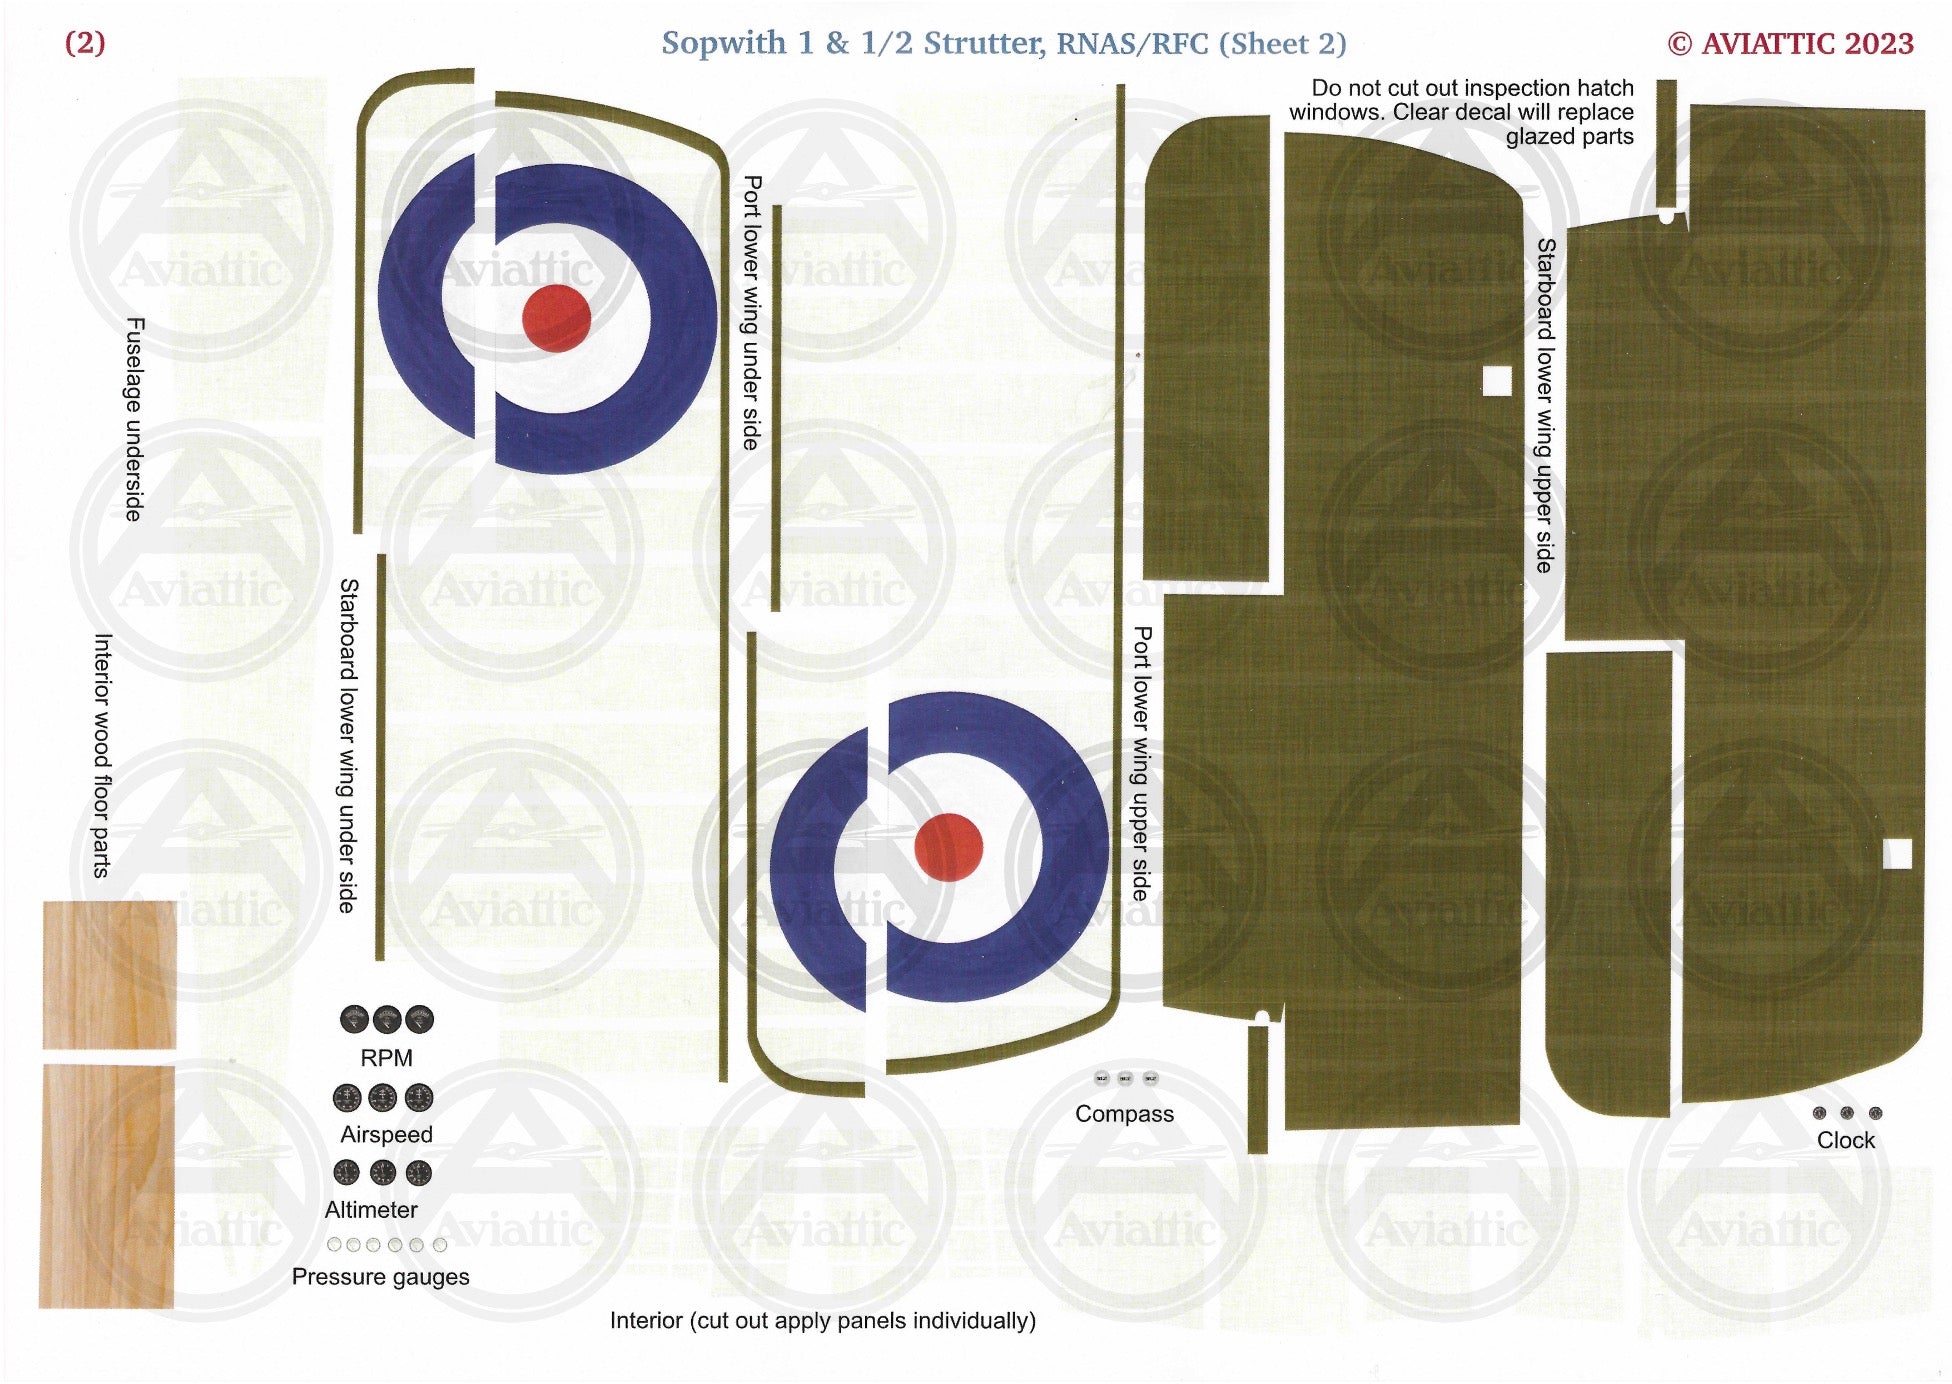 1/32 - Kit Bundle 2.0 - Roden - Sopwith 1 & 1/2 Strutter - 9739 - Flt Lt. C.B. Dalison, Gunlayer Fraser - N° 3 Wing, RNAS